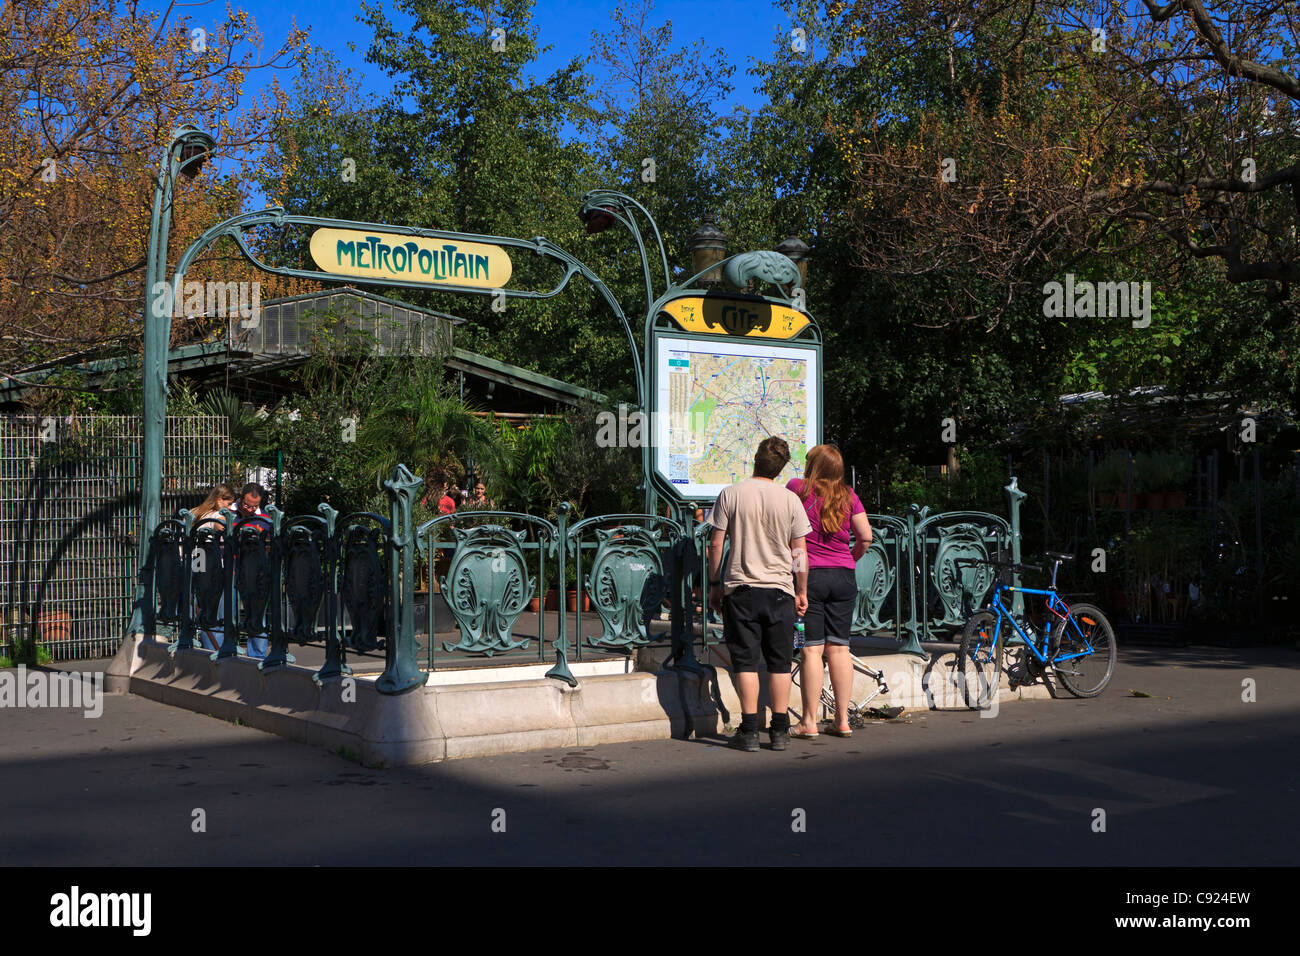 L'une des entrées de la station de métro Art Nouveau sur l'Ile de la Cité, Paris. Vérifiez la carte de touristes sur un matin d'automne. Banque D'Images